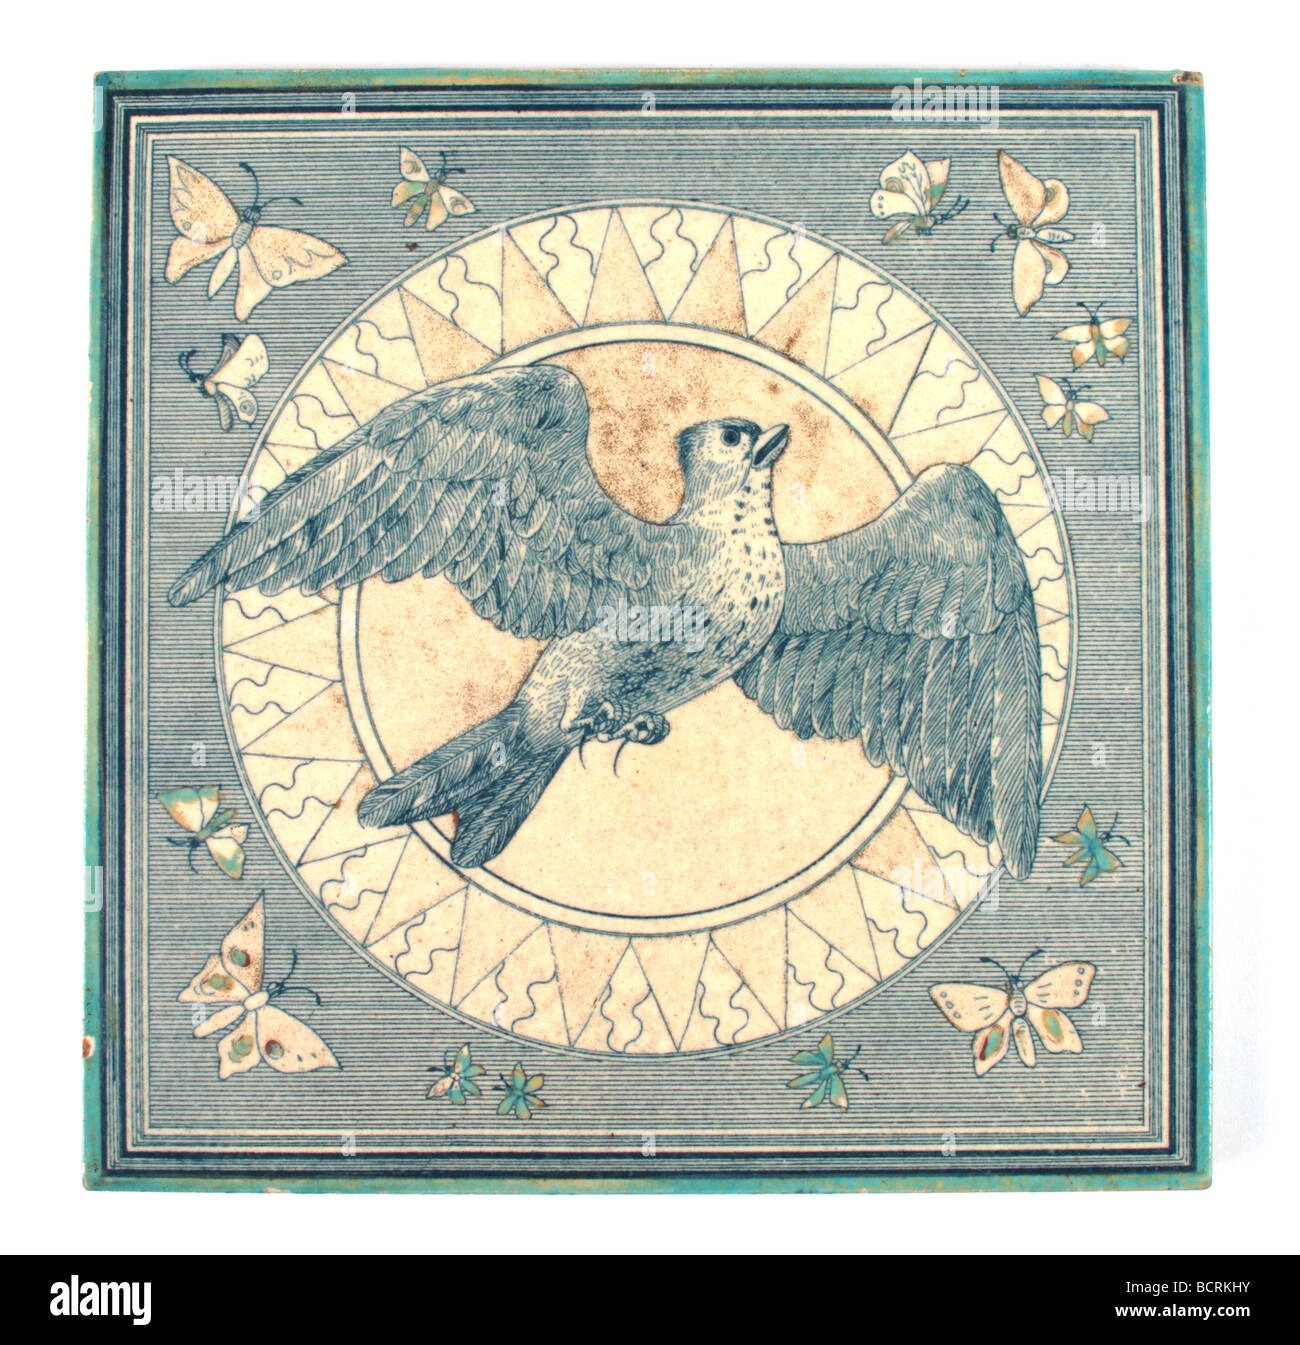 Mouvement Esthétique Maw & Co. décoré de carreaux avec un oiseau voler à travers le soleil avec les papillons à la frontière, vers 1880 Banque D'Images